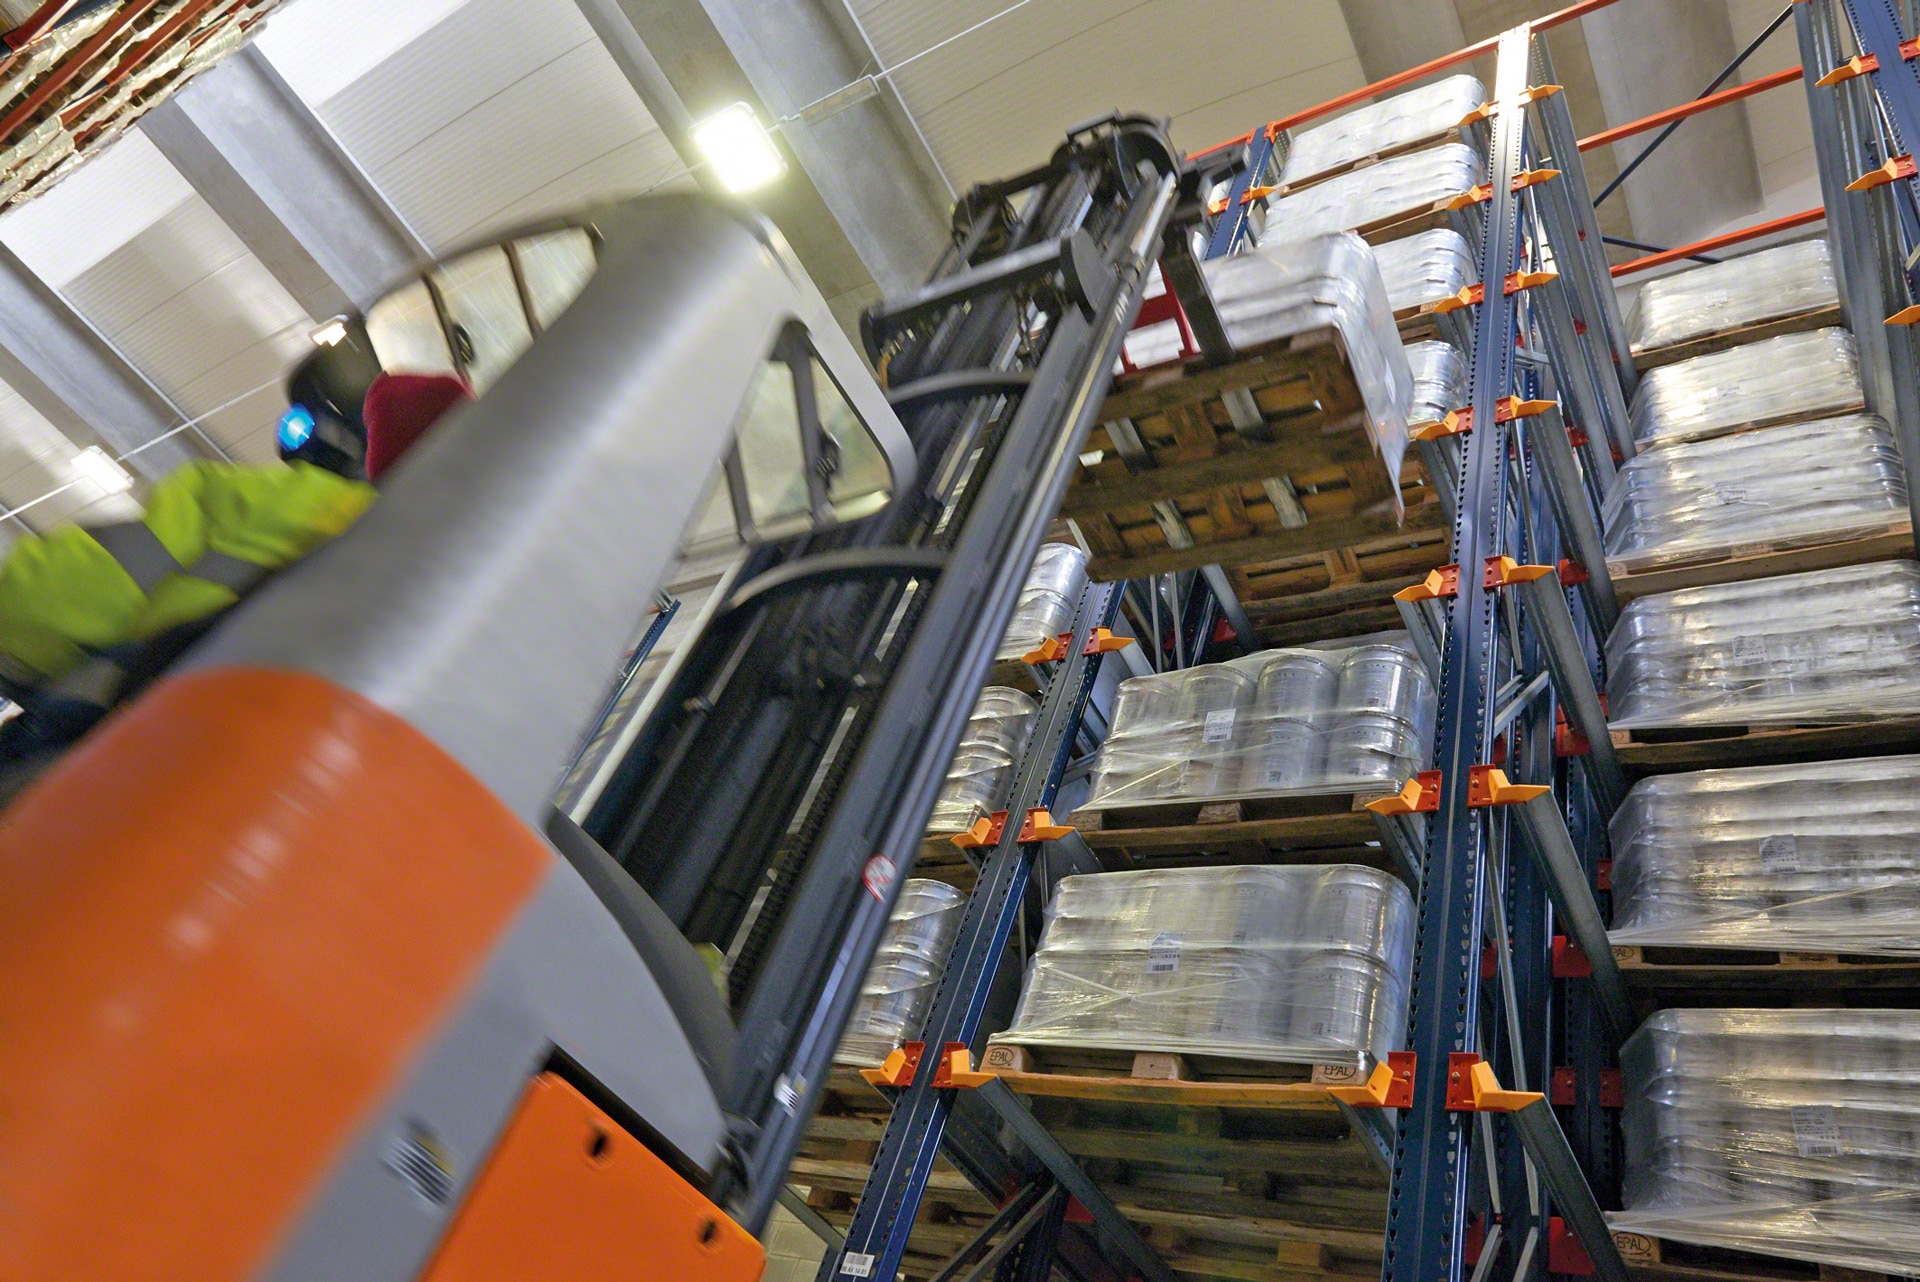 Los racks compactas facilitan a los equipos de manutención la carga y descarga de mercancía